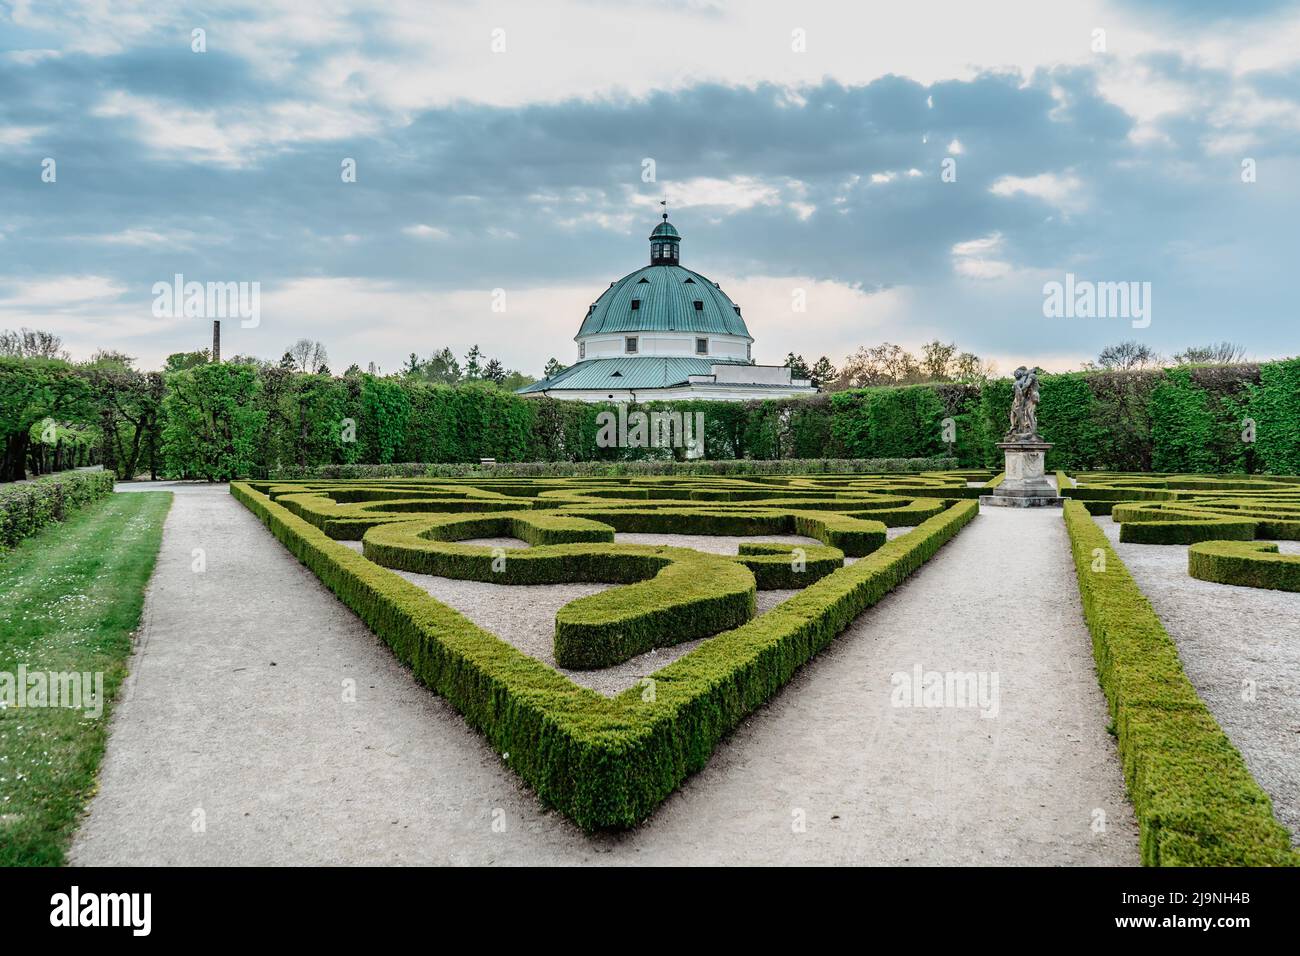 Kromeriz, Repubblica Ceca. Giardino dei fiori costruito in stile barocco francese, incluso nella lista del patrimonio mondiale dell'UNESCO. Labirinto di pareti verdi, floreali e scultori Foto Stock